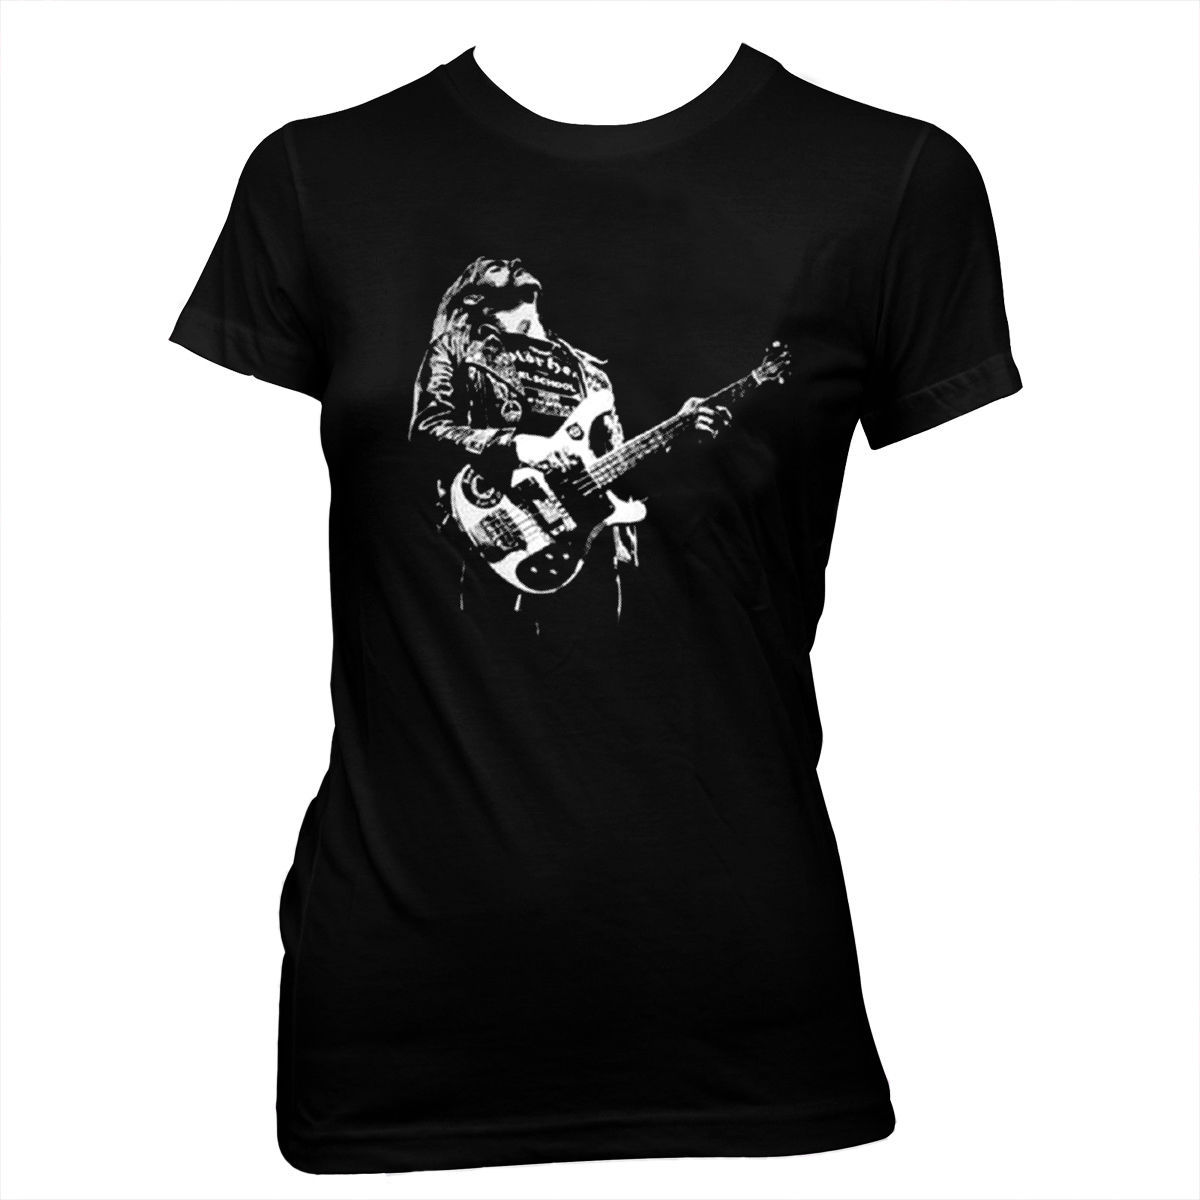 Lemmy Kilmister - Motorhead - Heavy Metal Women's Pre-shrunk 100% Cotton T-shirt